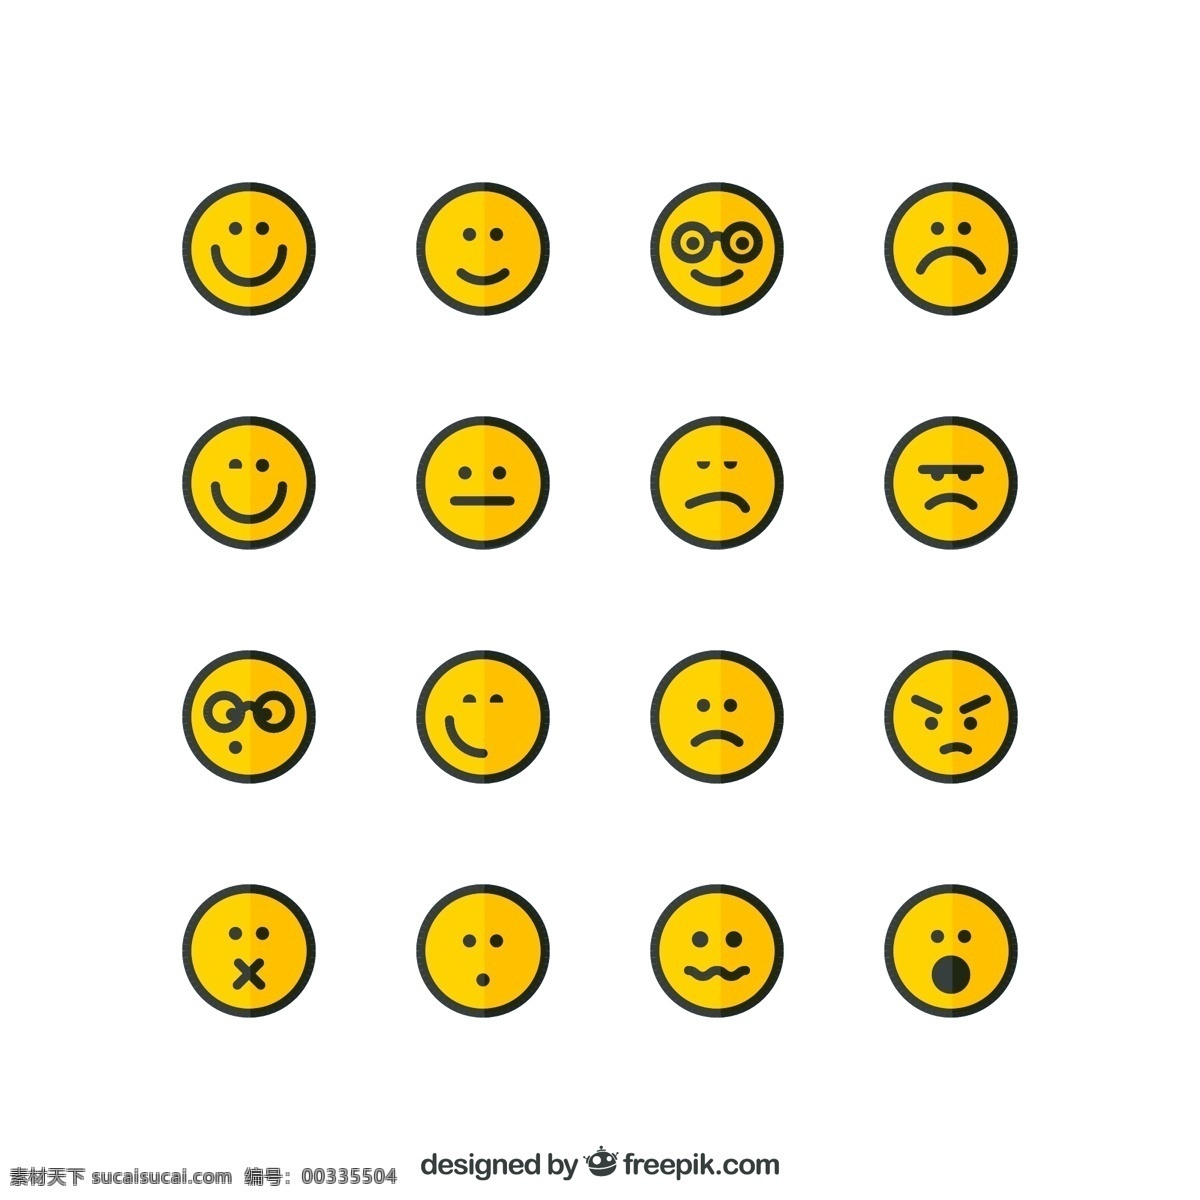 圆形表情图标 橙色圆形表情 表情图标 qq表情 手机表情 笑脸表情 难过表情 生气表情 可爱表情 平面素材